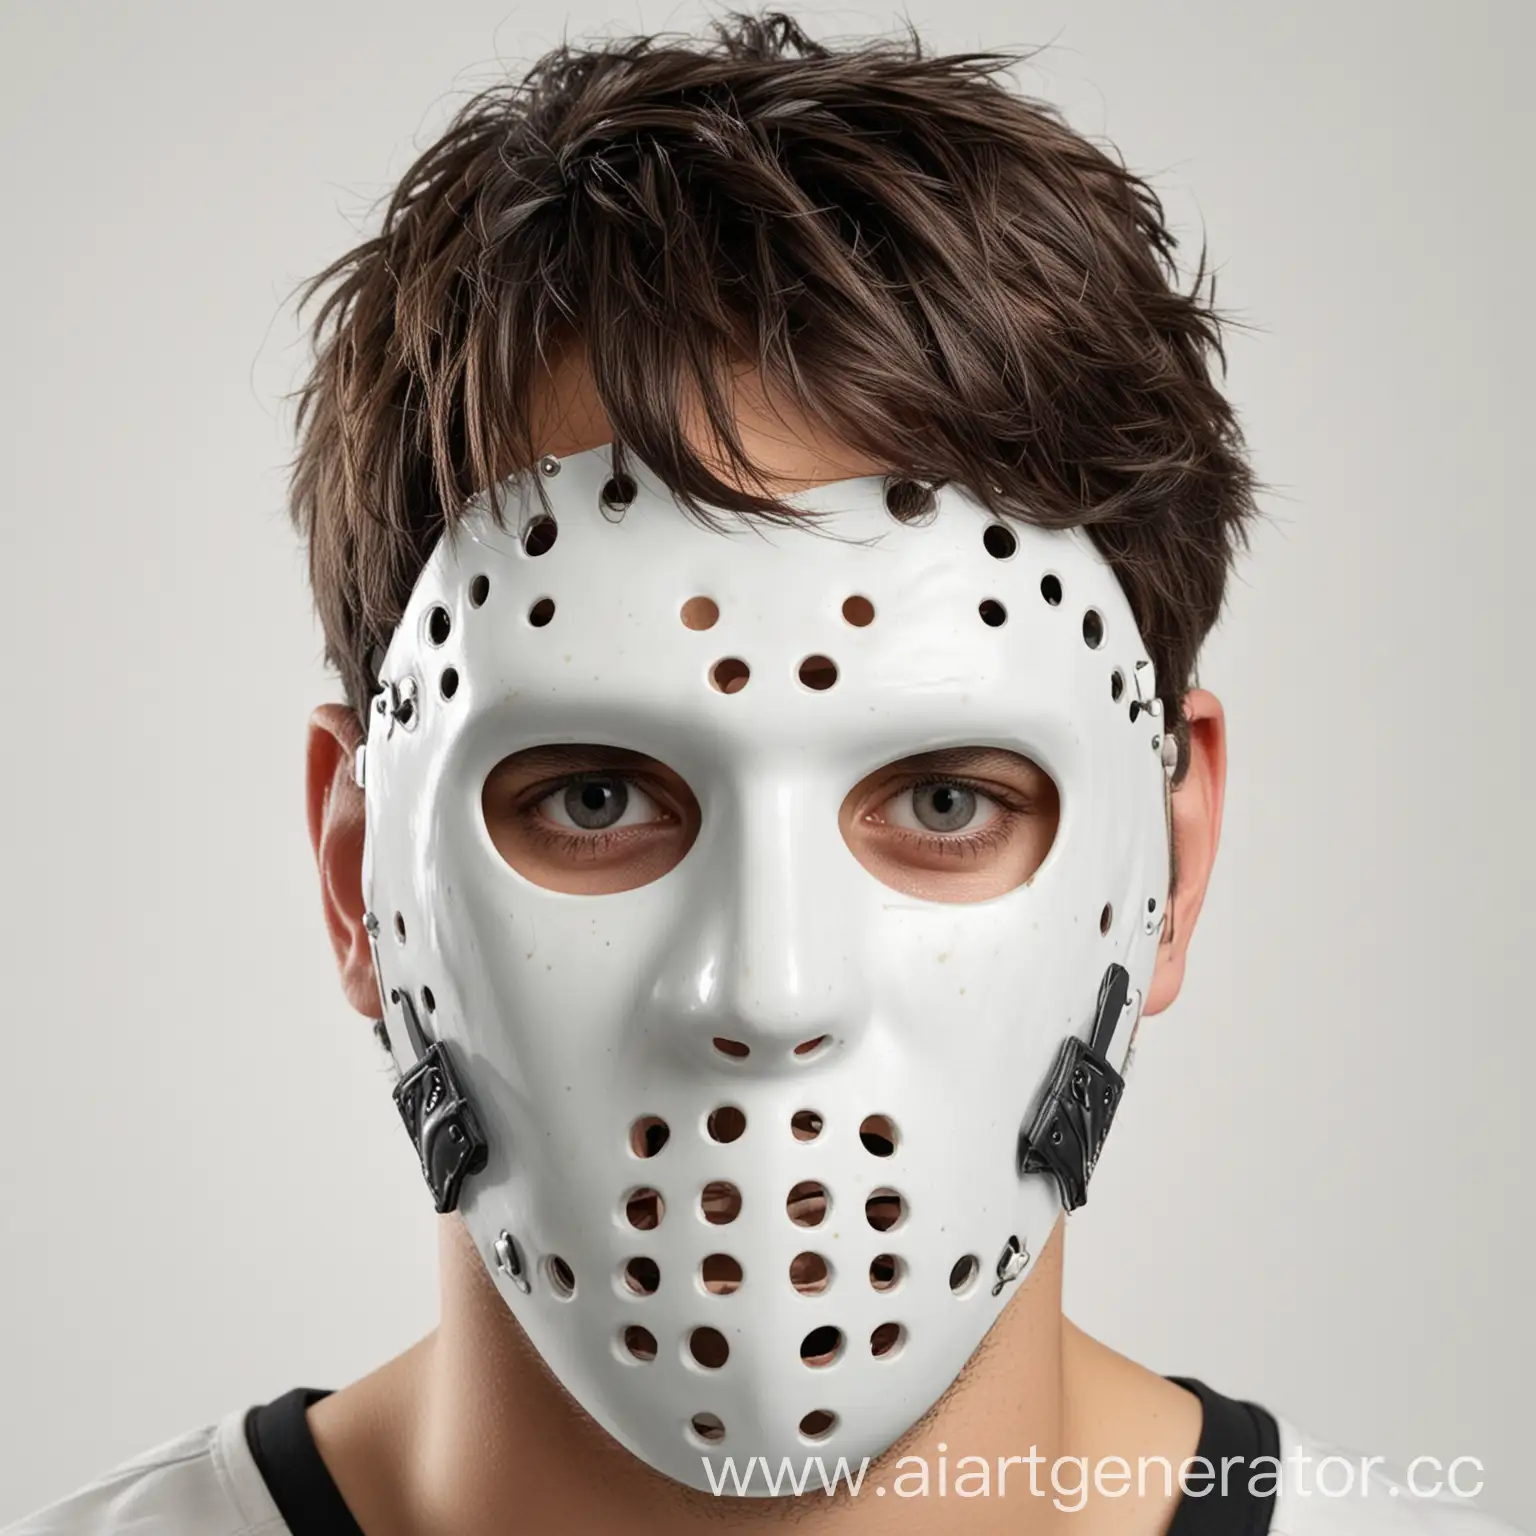 хоккейная маска на человеке, белый фон, реалистичное фото